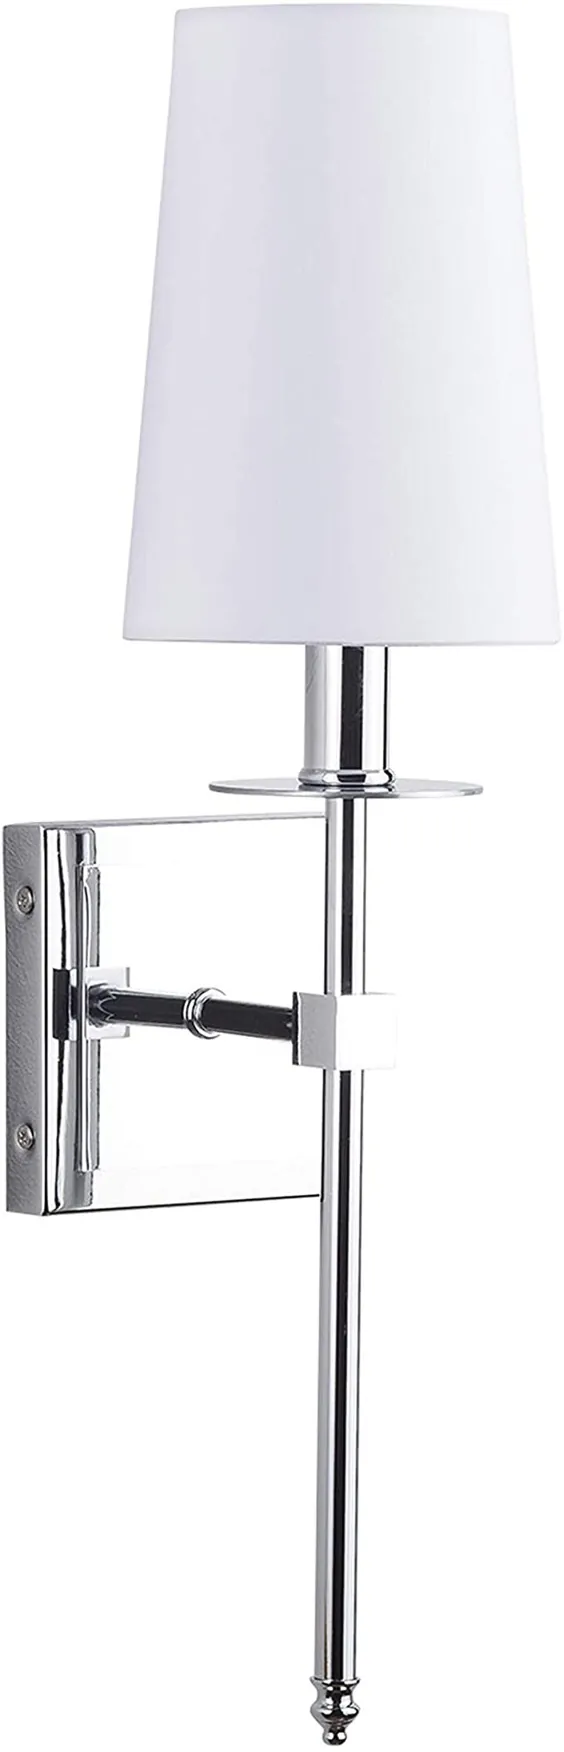 لامپ Torcia Wall Sconce Slim1 با سایه پارچه ای |  Chrome Vanity Light LL-SC425-PC